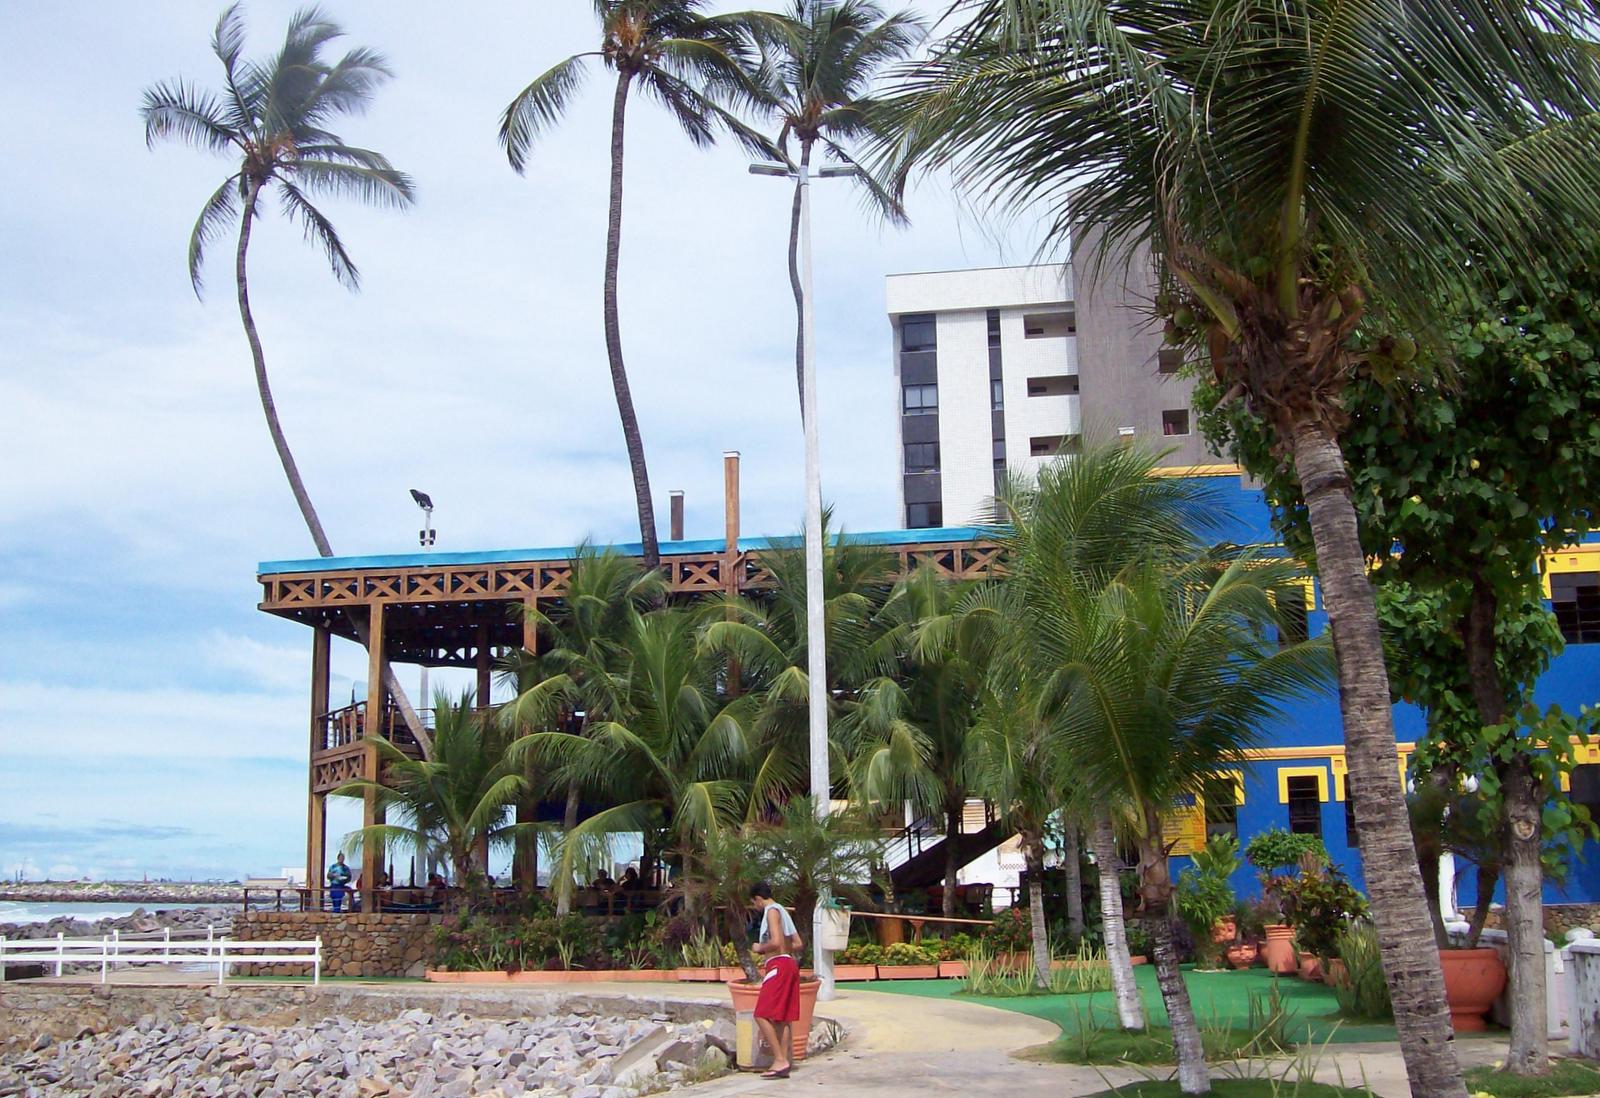 Praia de Iracema - Fortaleza